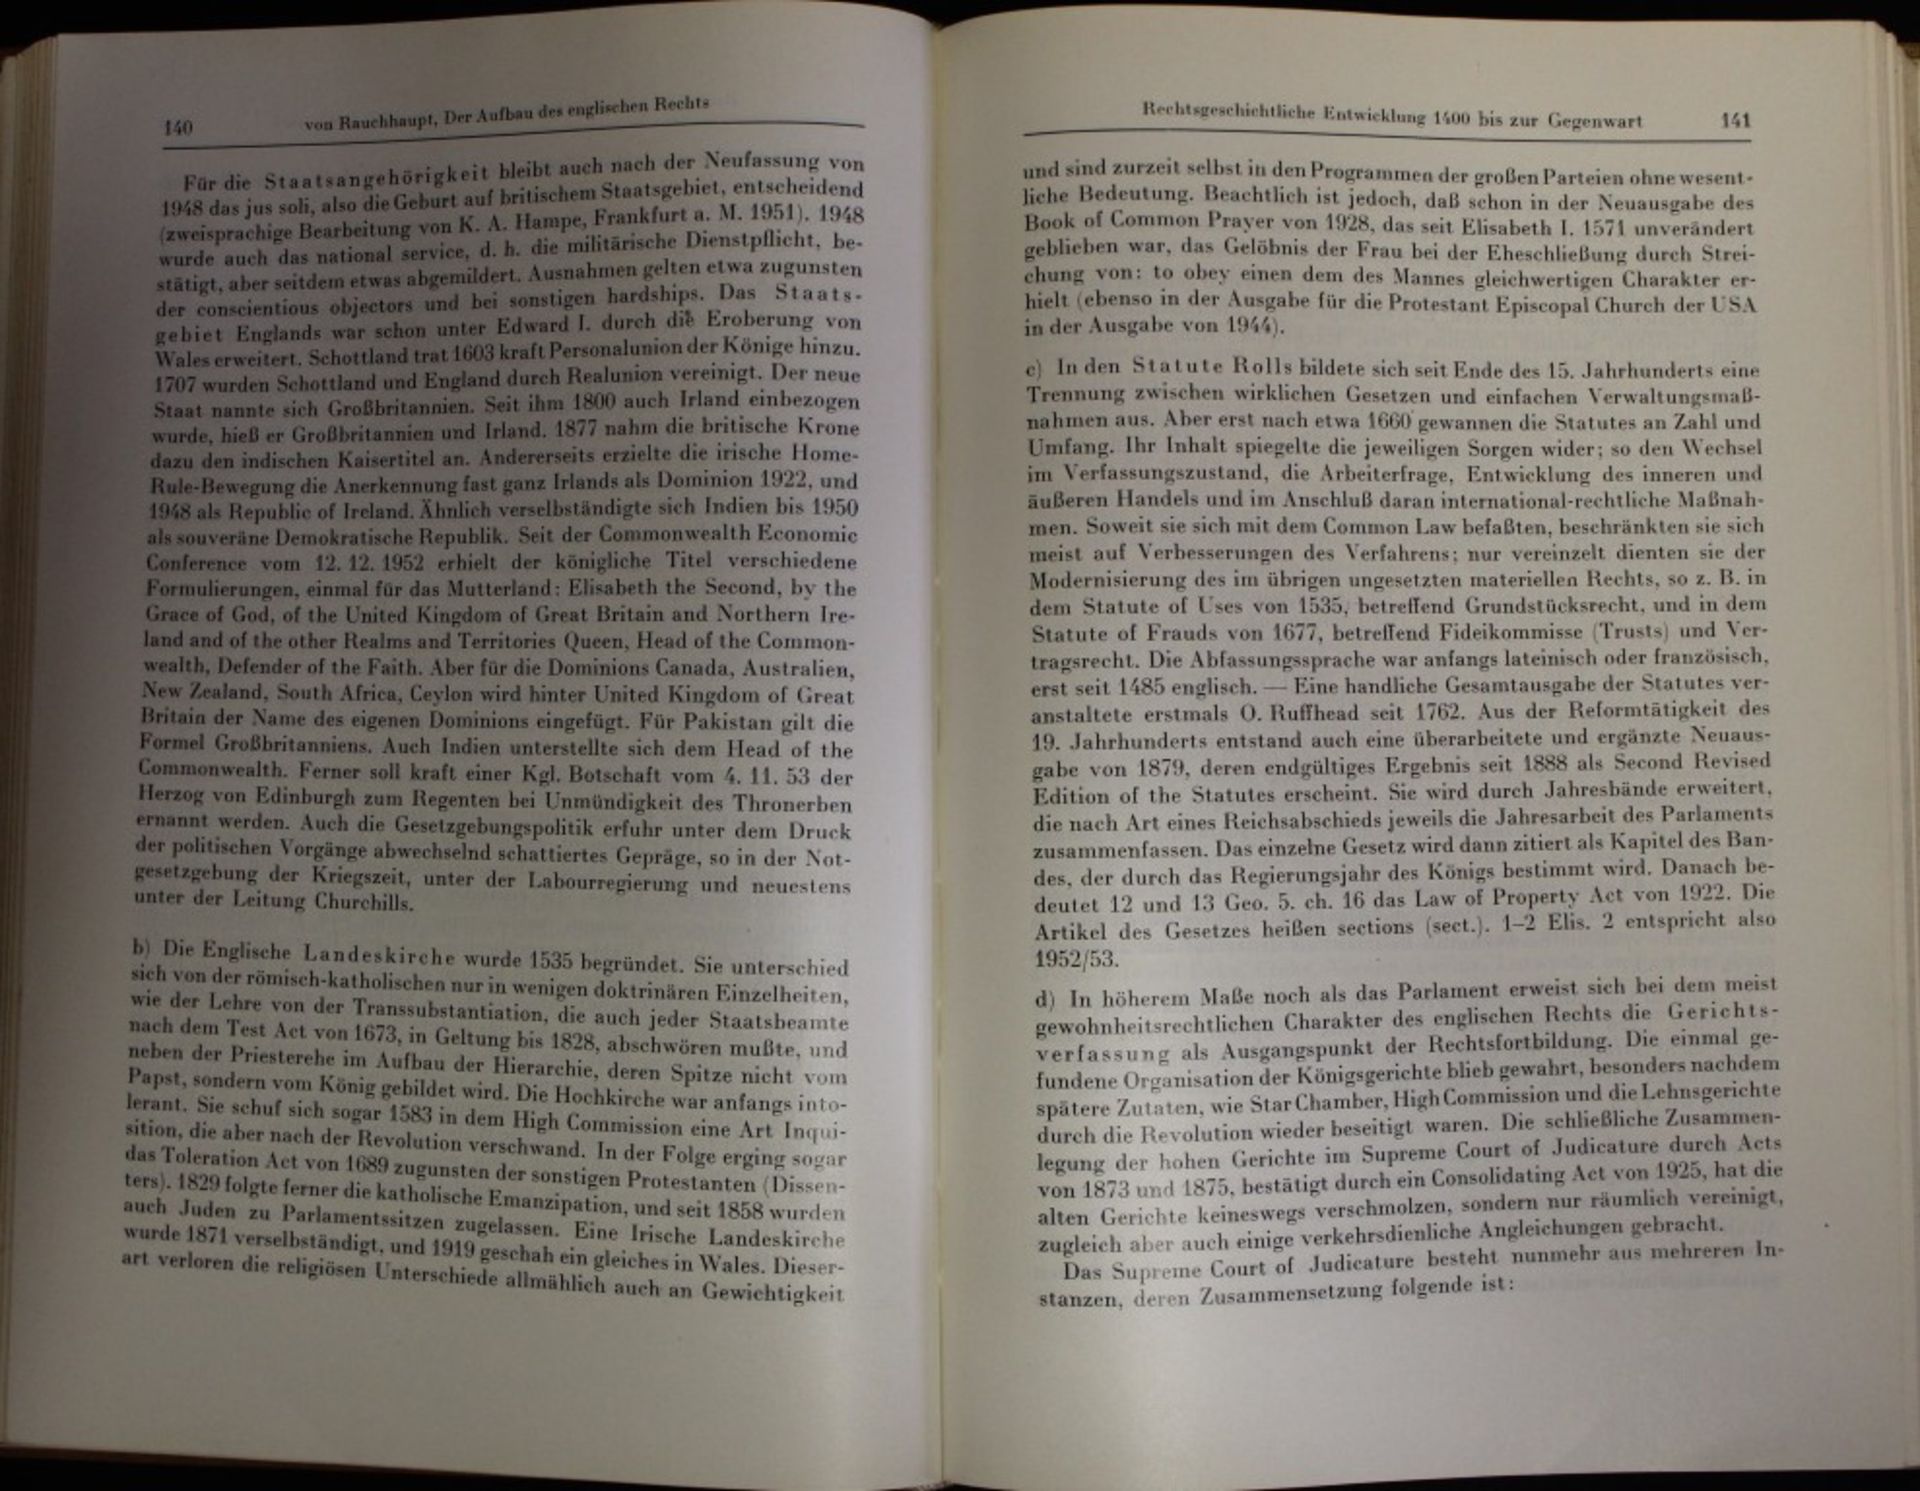 Englandkunde, Dritte Auflage, Herausgeg. Dr. Paul Hartig, 1955, Handbücher der Auslandskunde, - Bild 3 aus 3